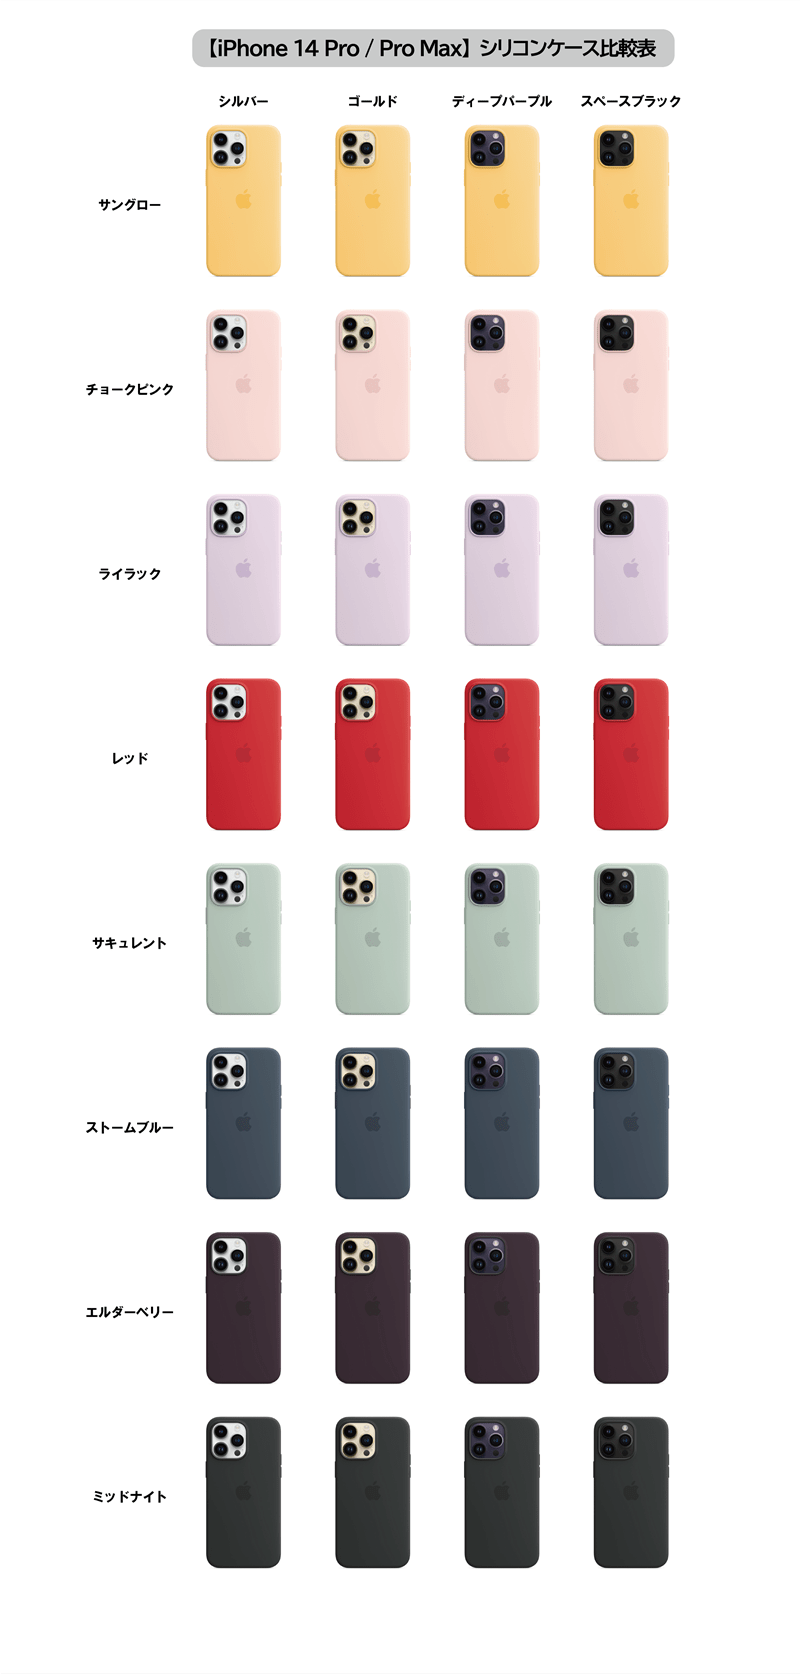 MagSafe対応iPhone 14 Pro/ Pro Maxシリコンケースの全カラー組み合わせ・比較表【Apple純正スマホケース】